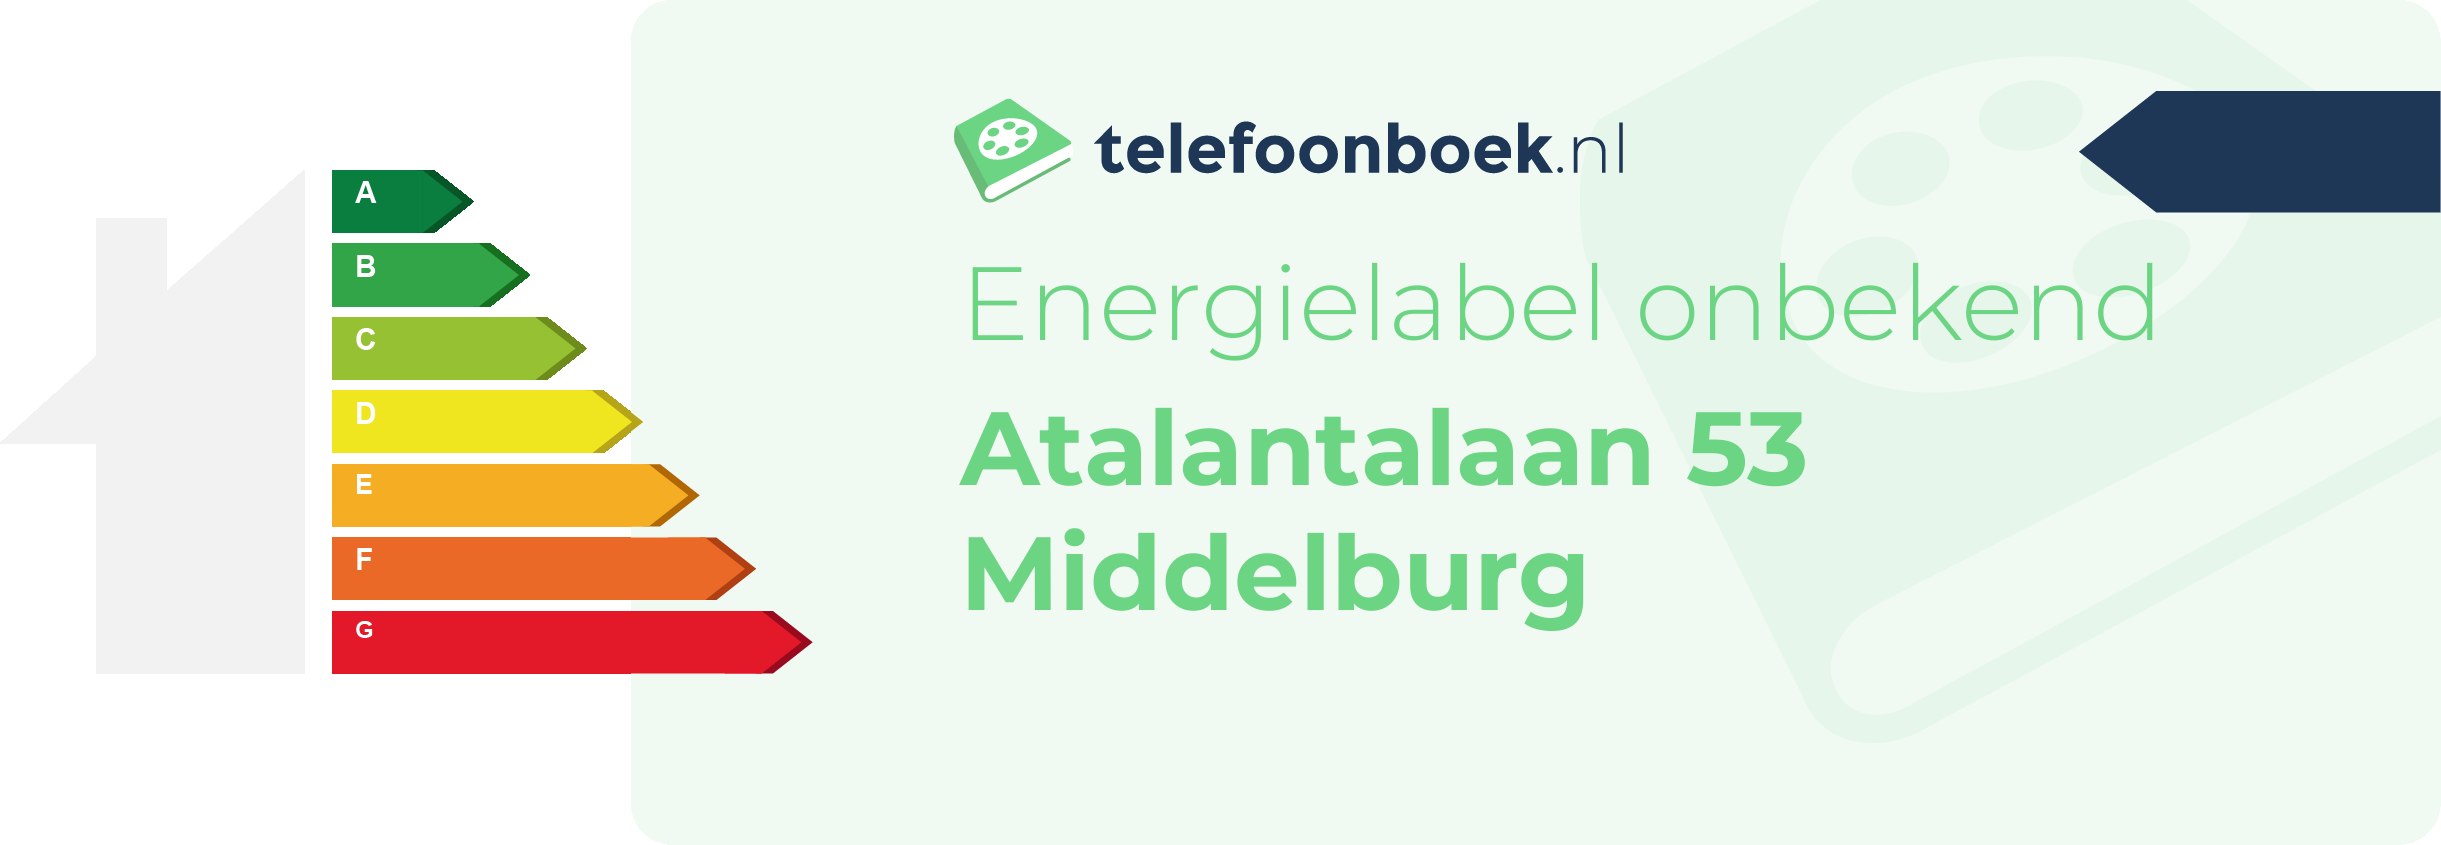 Energielabel Atalantalaan 53 Middelburg